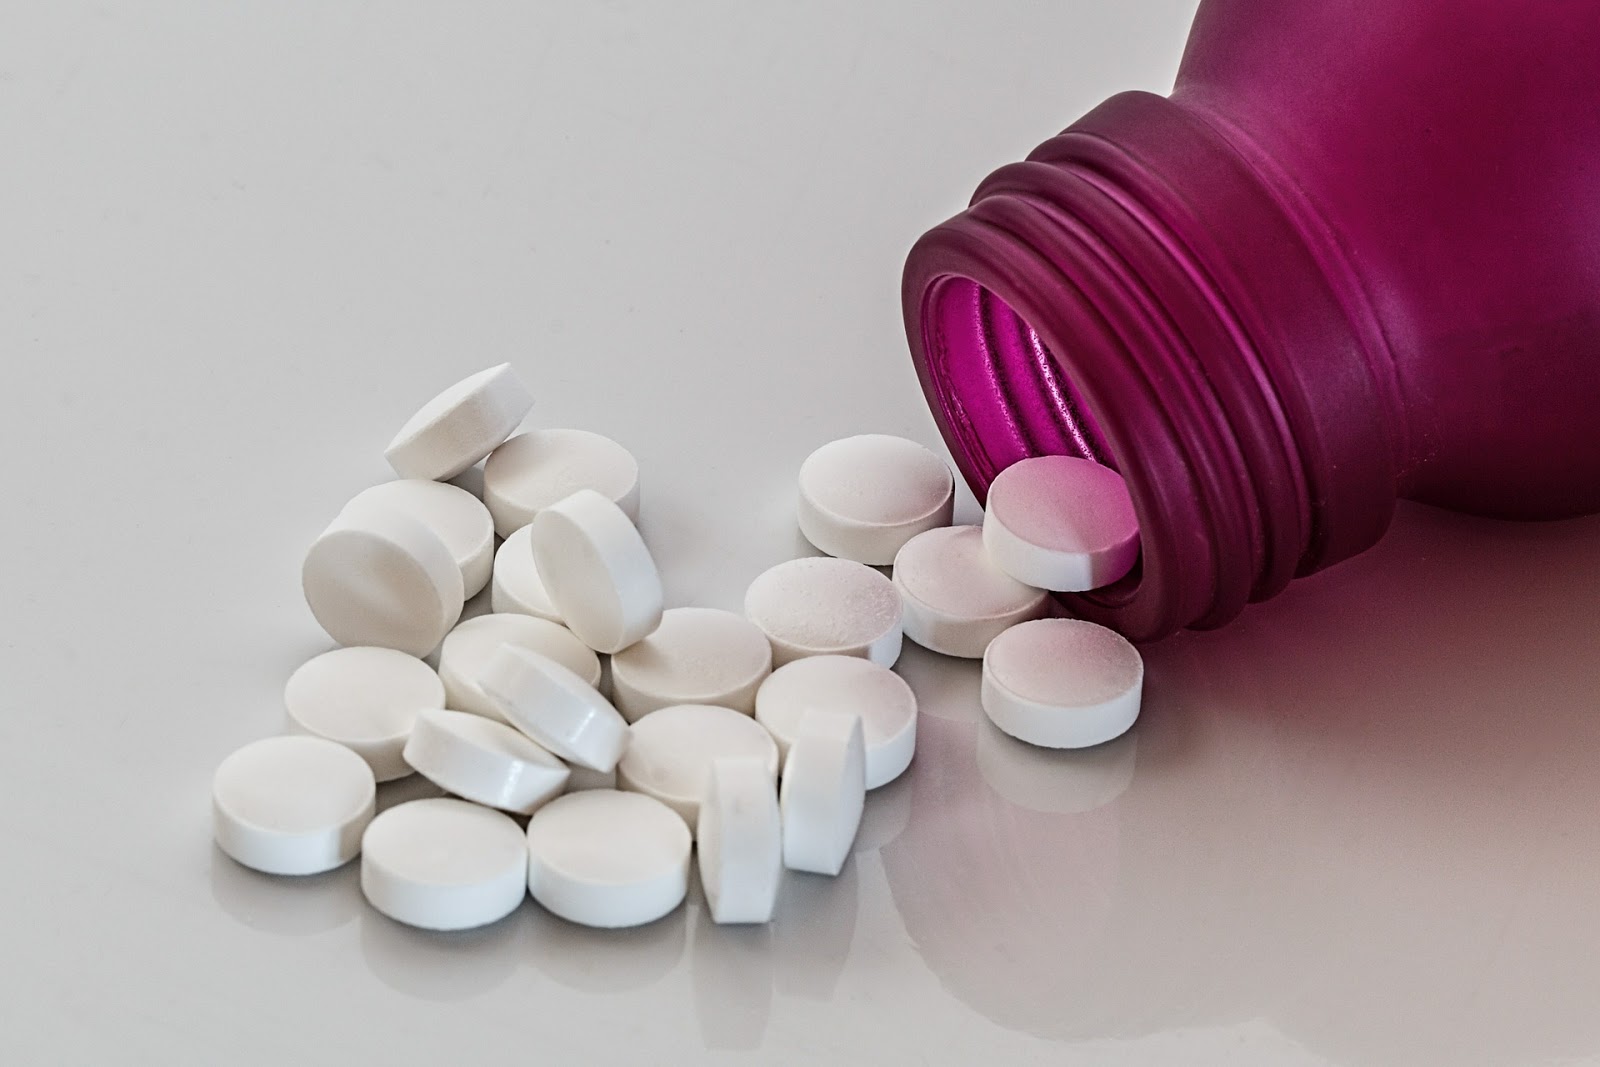 ΕΕ: Ανακαλούνται φάρμακα που περιέχουν βαλσαρτάνη λόγω υποψίας καρκινογενέσεων